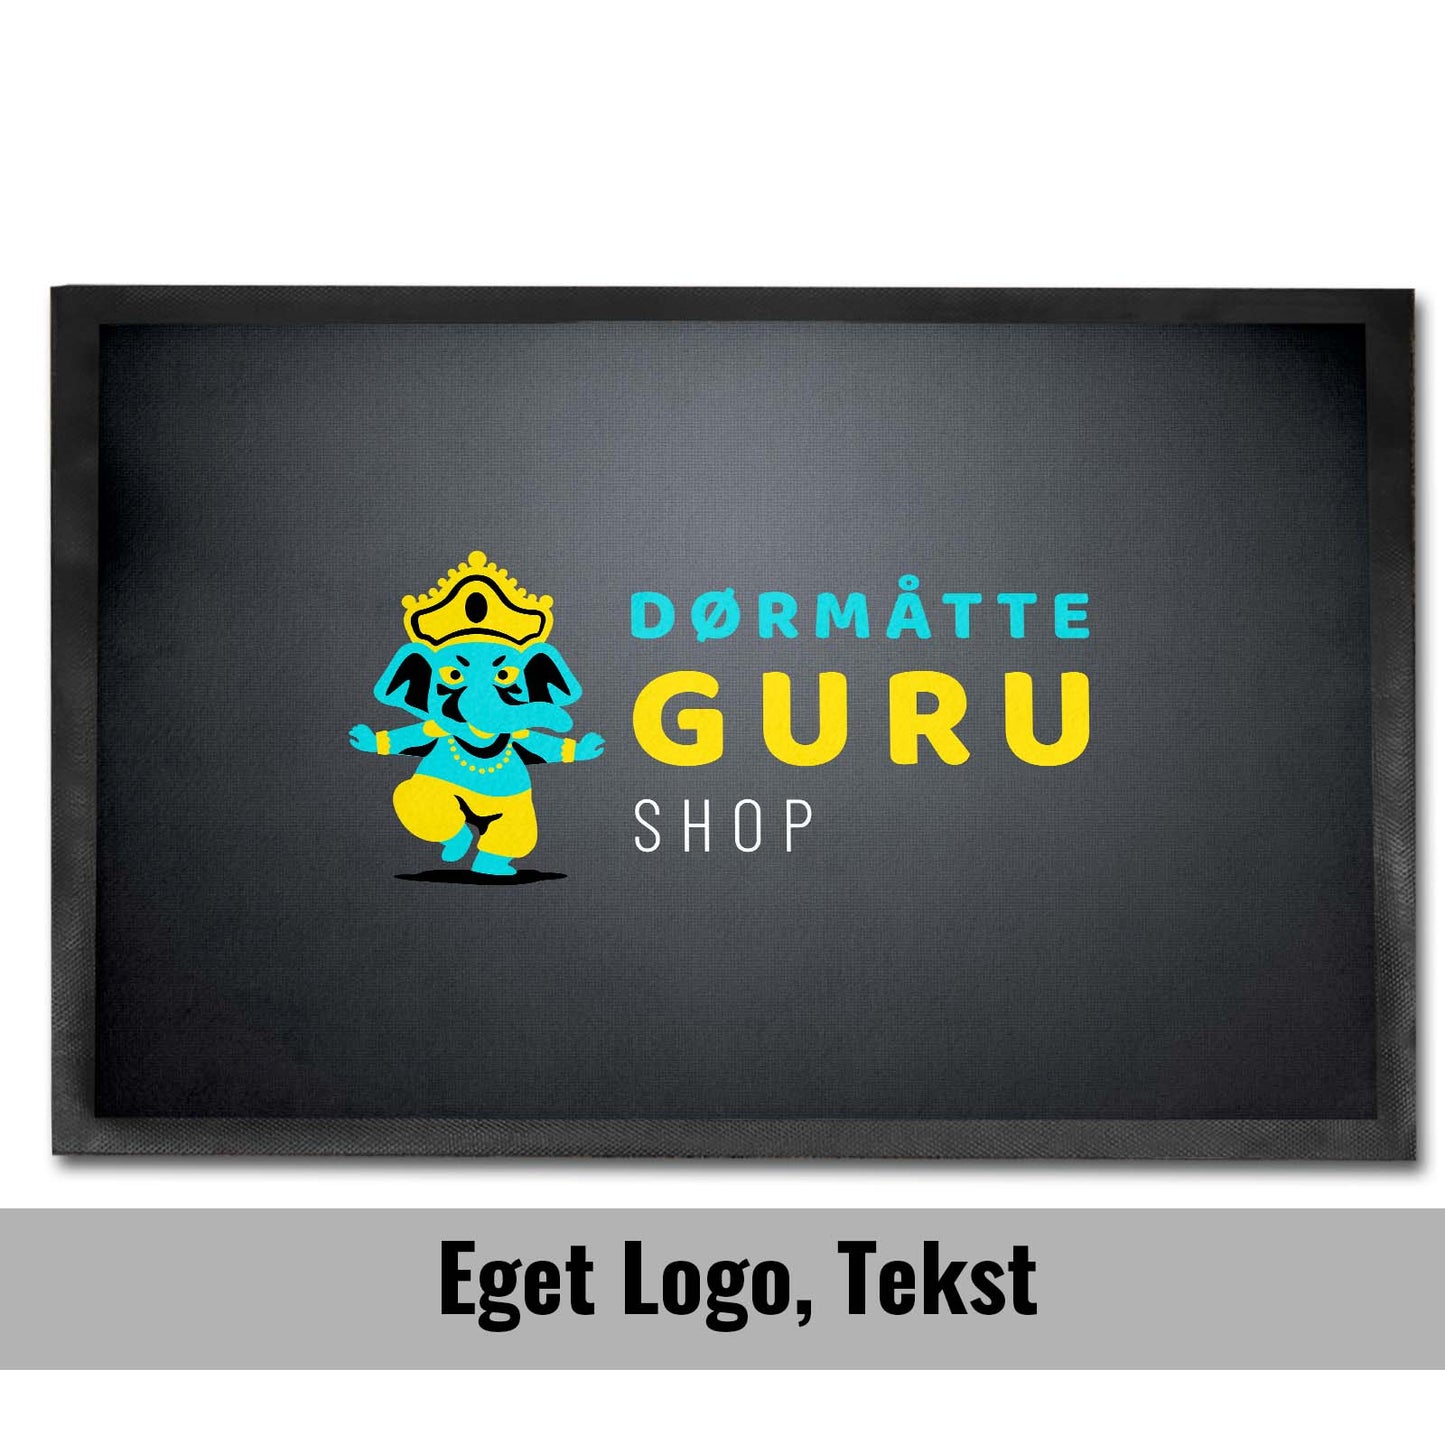 Dørmåtte Logo - Personlige Design – Dørmåtte Guru